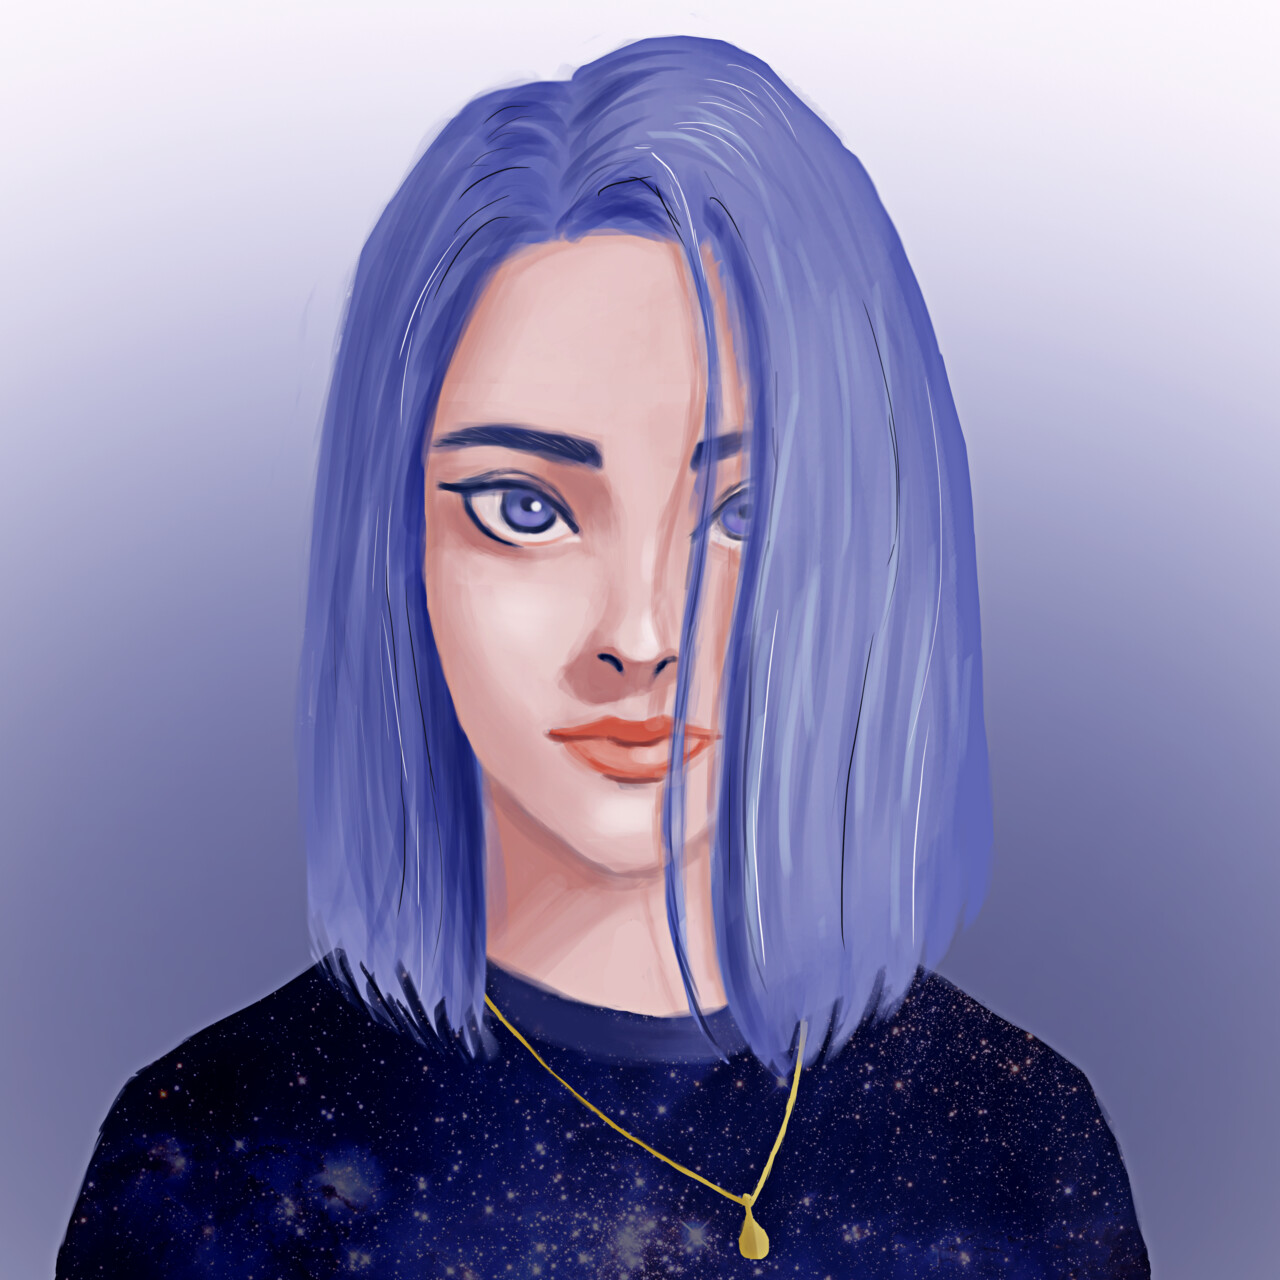 ArtStation - Blue Hair Girl